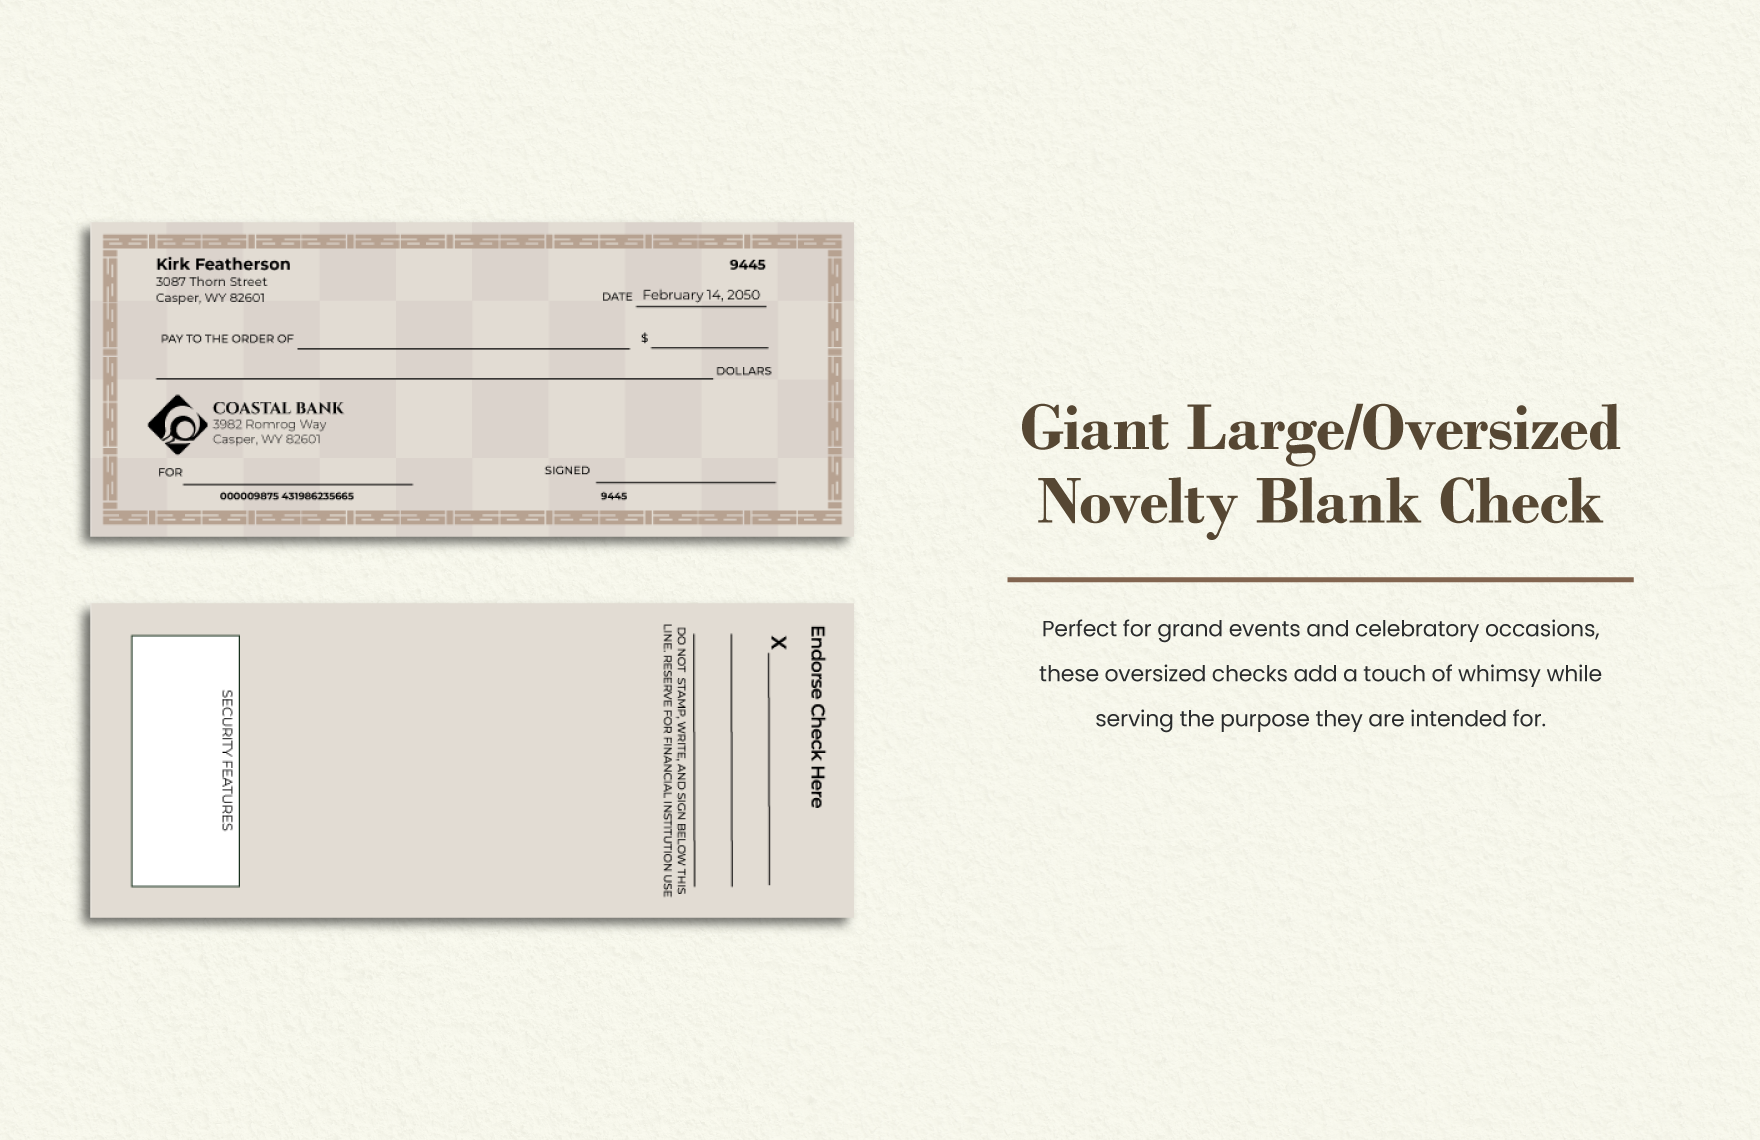 Giant Large / Oversized Novelty Blank Check